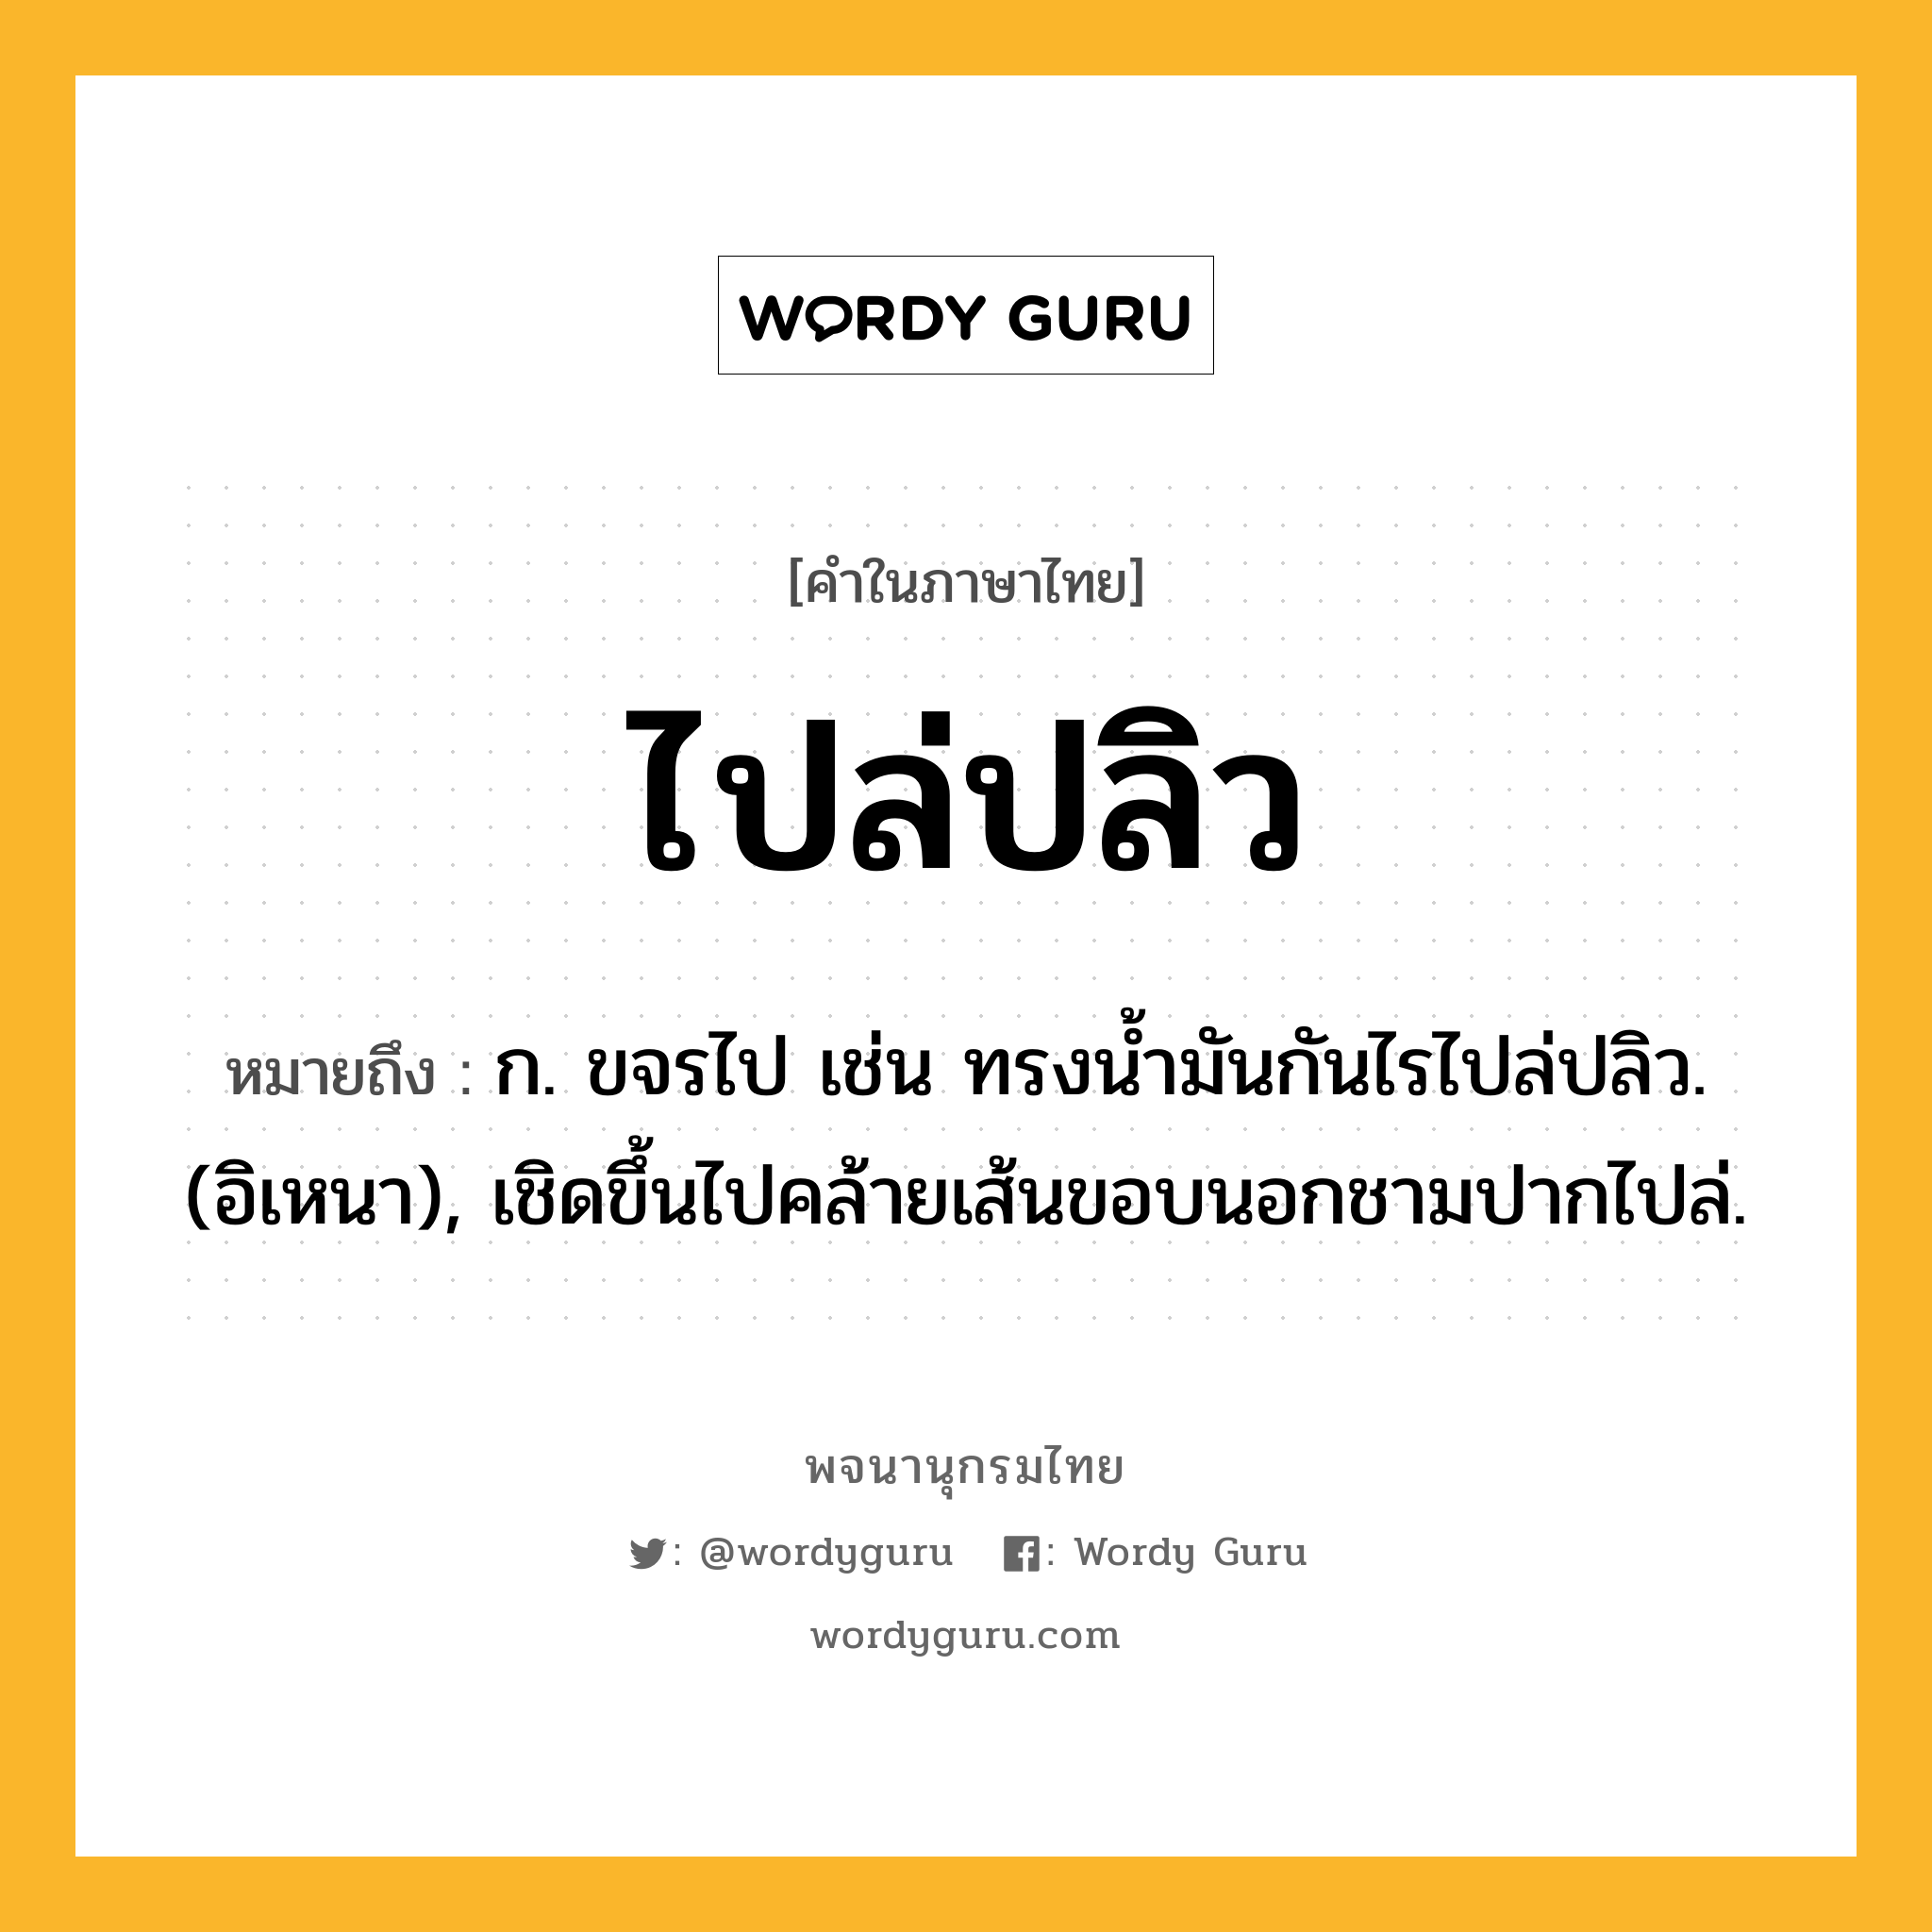 ไปล่ปลิว หมายถึงอะไร?, คำในภาษาไทย ไปล่ปลิว หมายถึง ก. ขจรไป เช่น ทรงนํ้ามันกันไรไปล่ปลิว. (อิเหนา), เชิดขึ้นไปคล้ายเส้นขอบนอกชามปากไปล่.